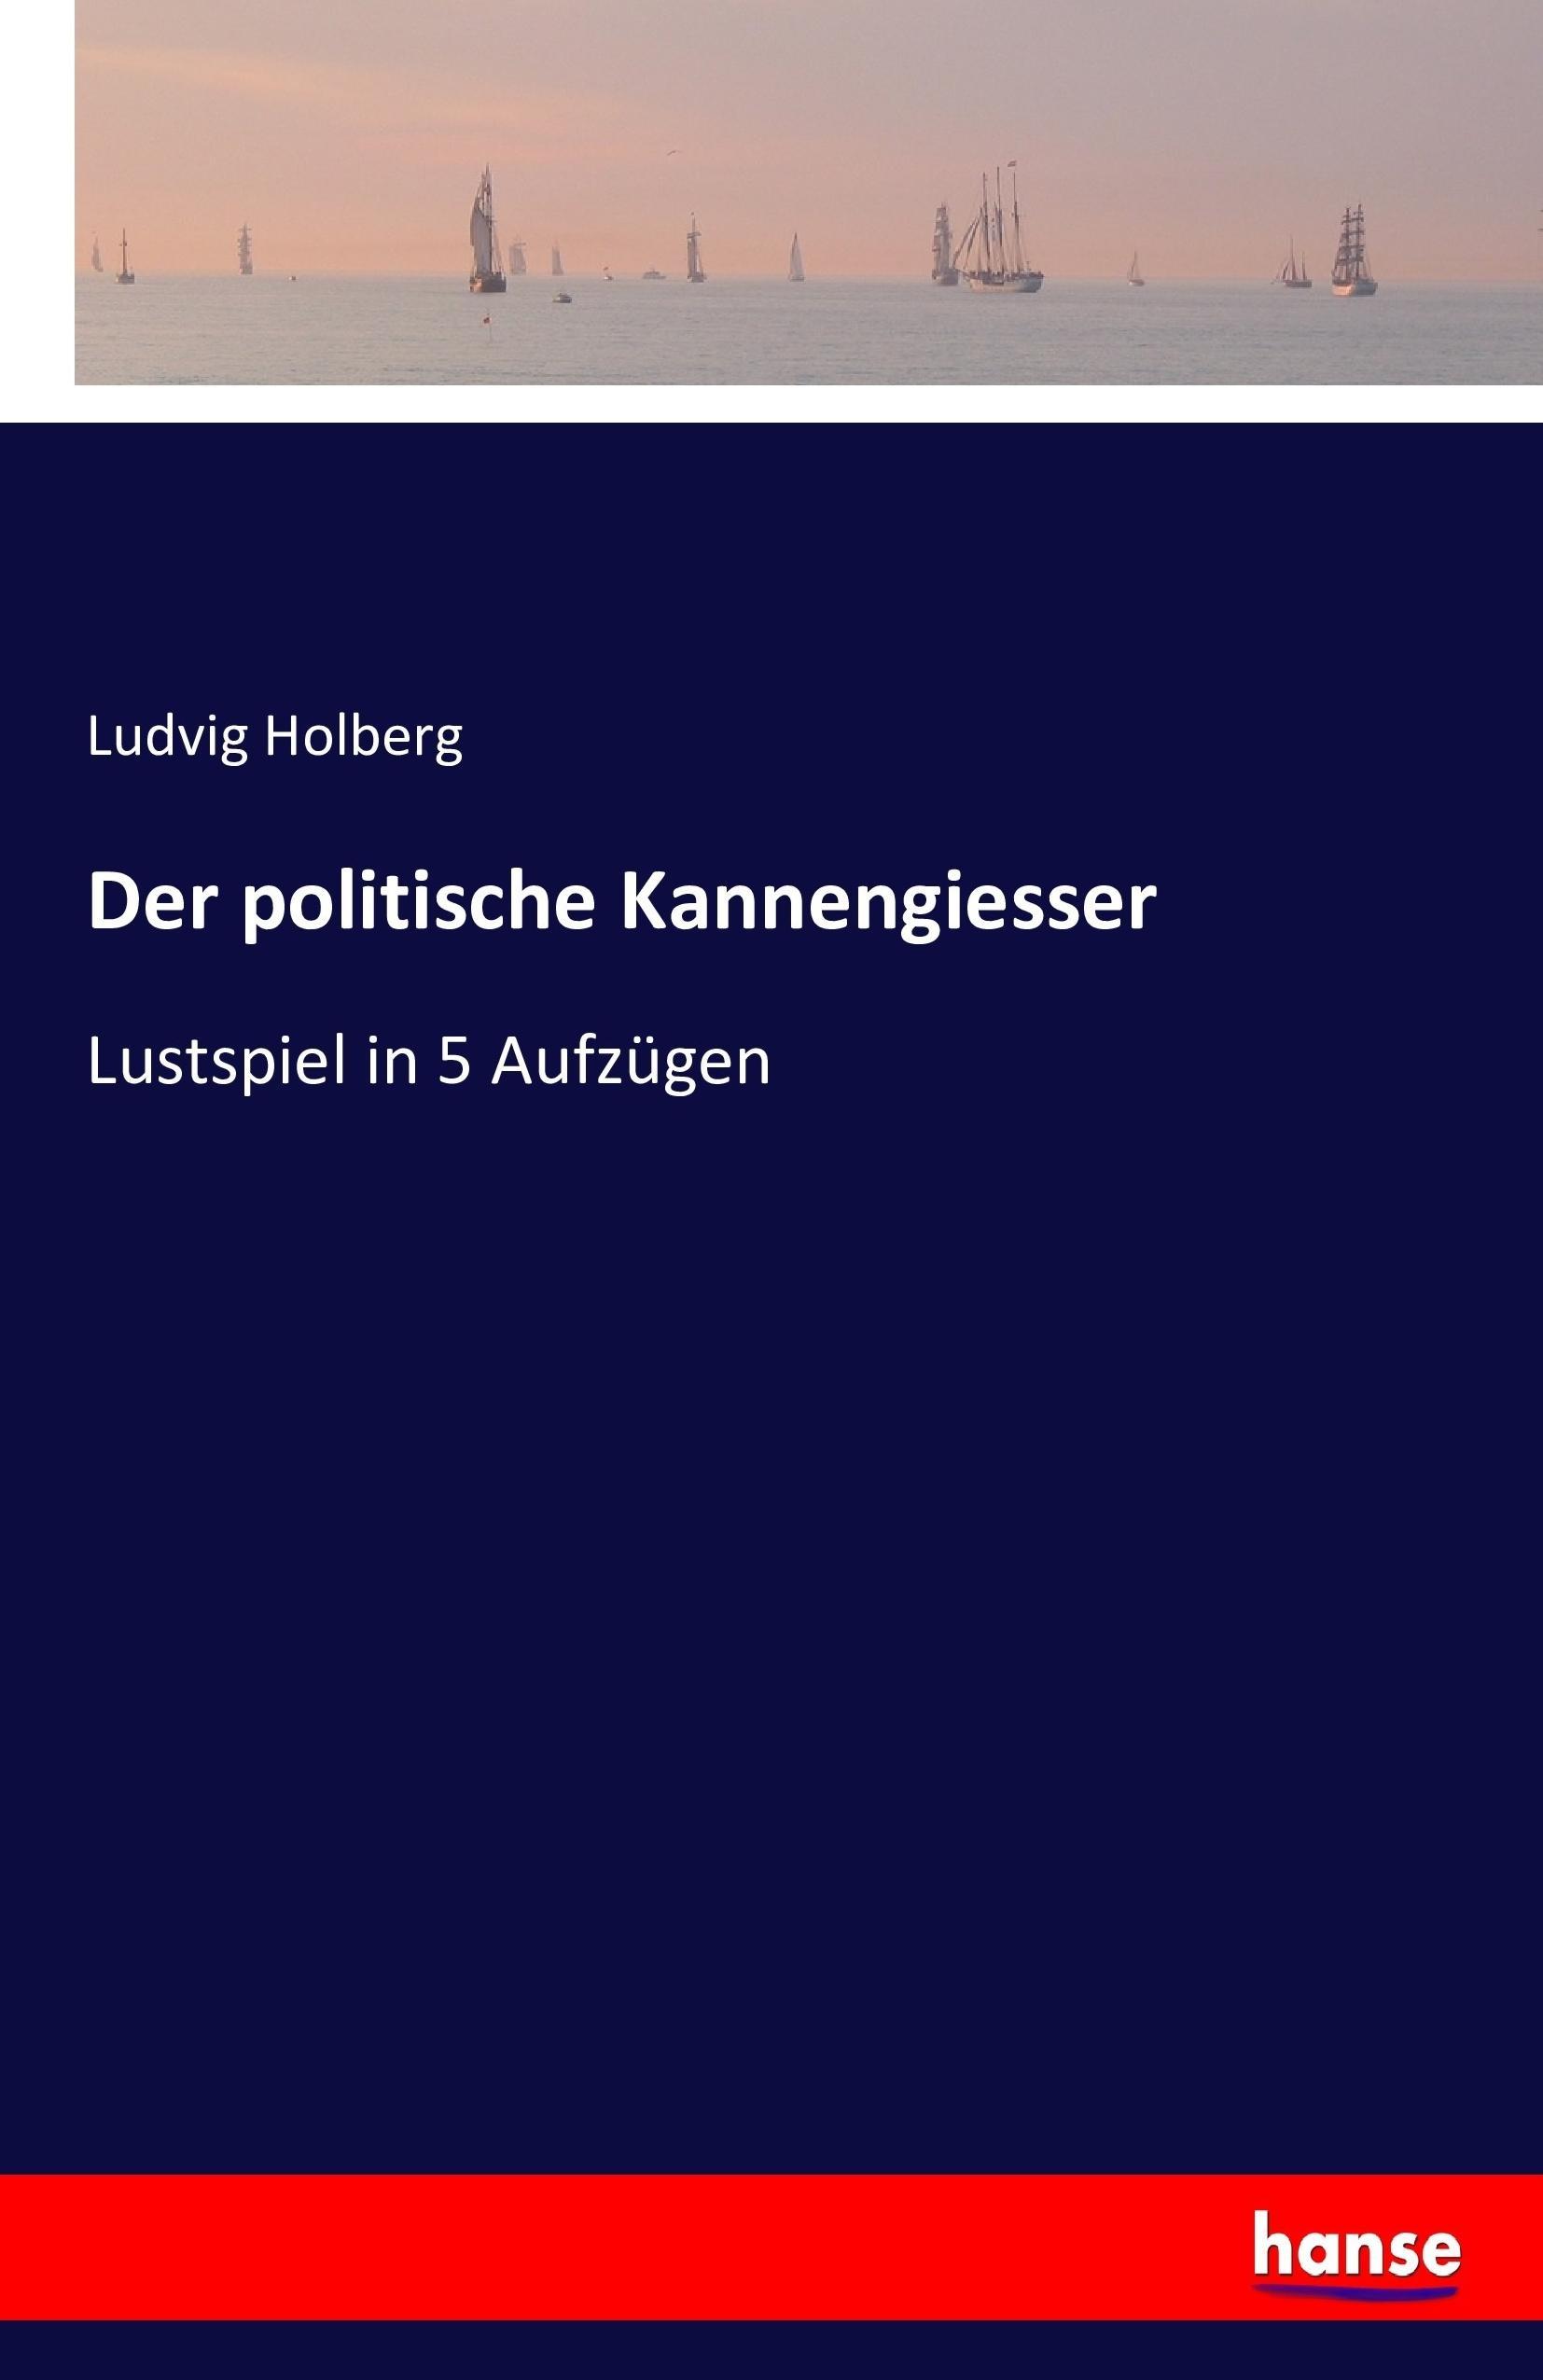 Der politische Kannengiesser | Lustspiel in 5 Aufzügen | Ludvig Holberg | Taschenbuch | Paperback | 68 S. | Deutsch | 2016 | hansebooks | EAN 9783743360952 - Holberg, Ludvig